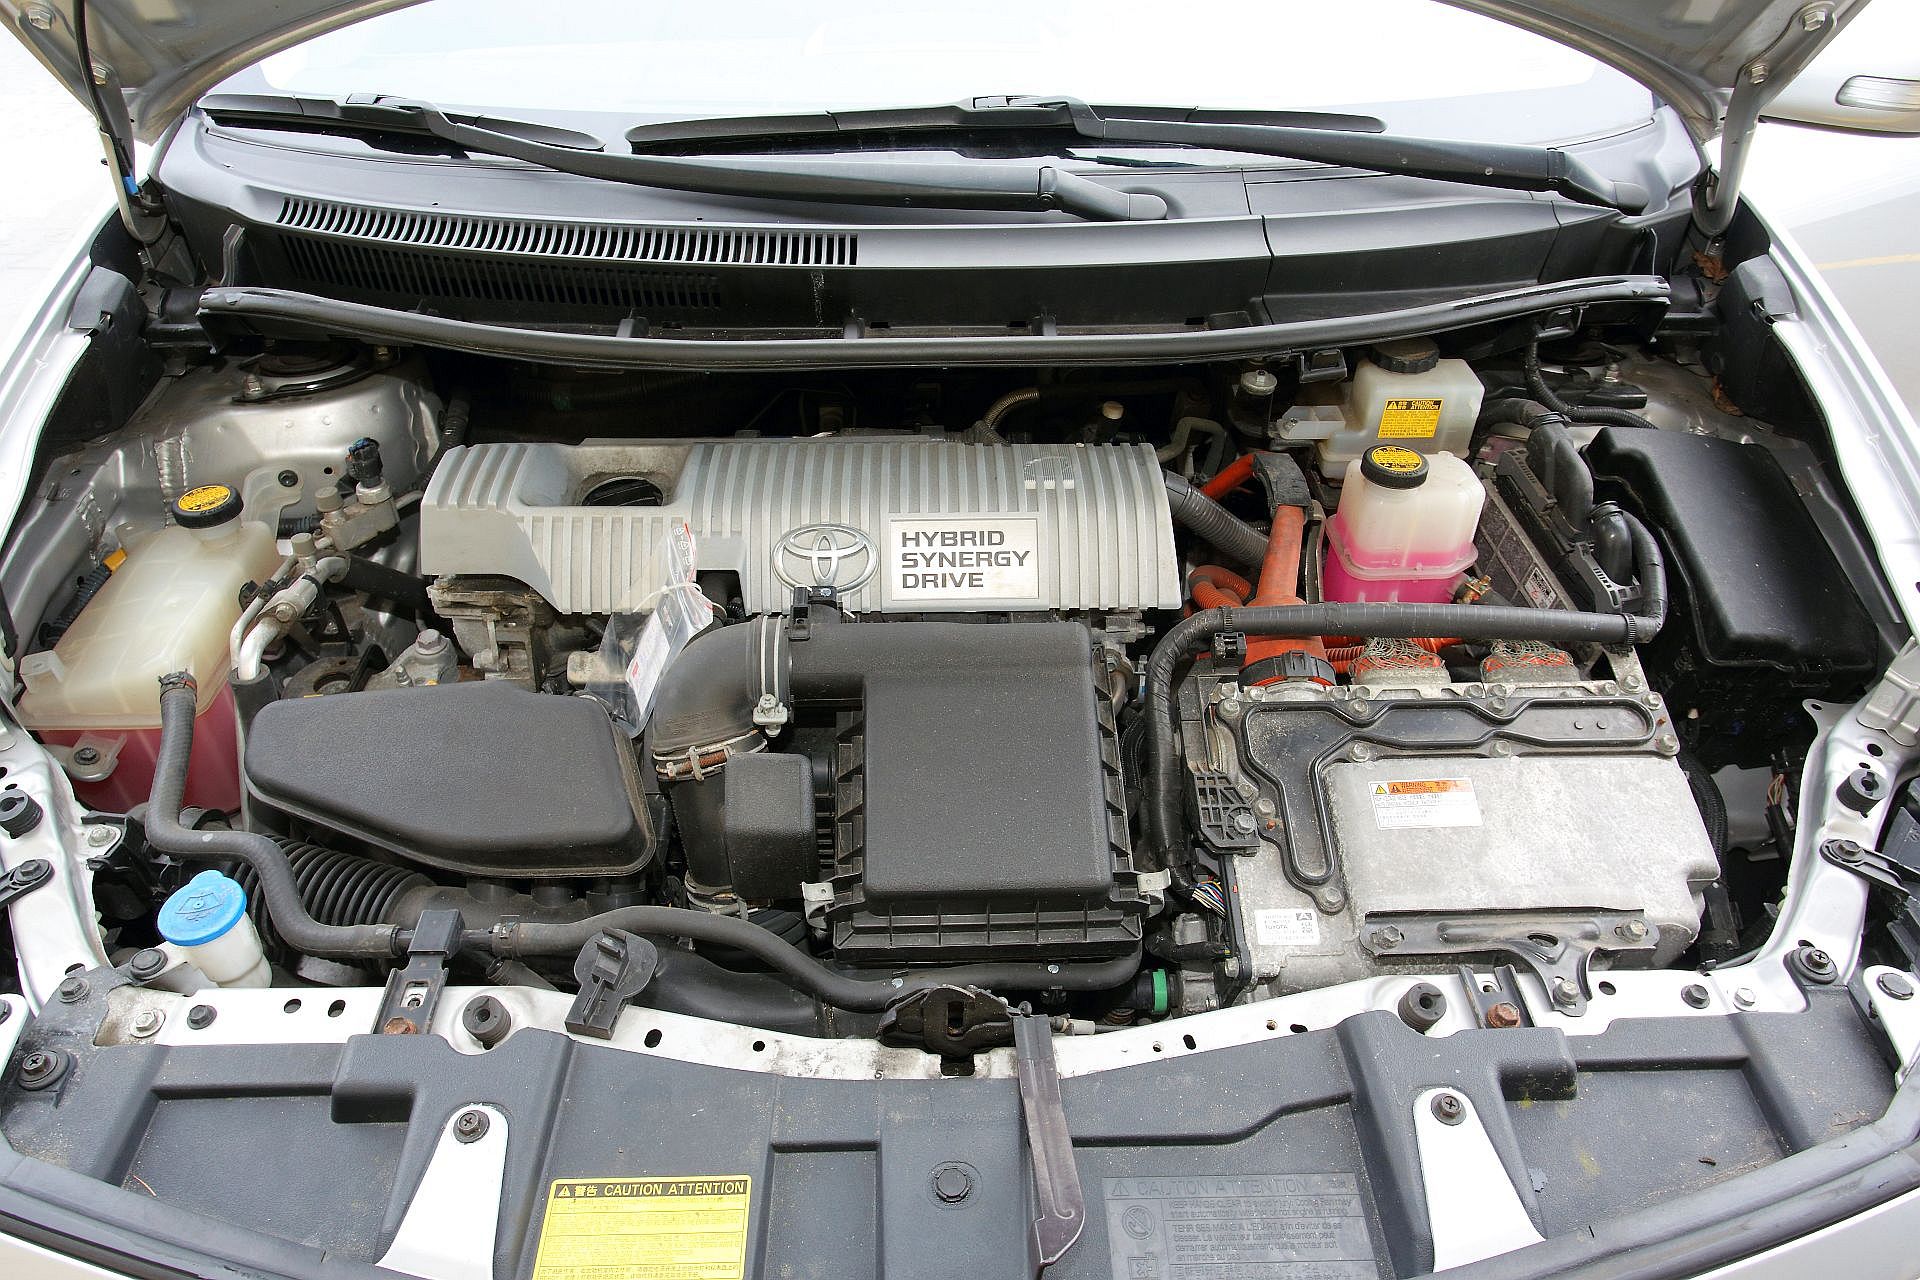 Używana Toyota Auris I (20072012) opinie, dane